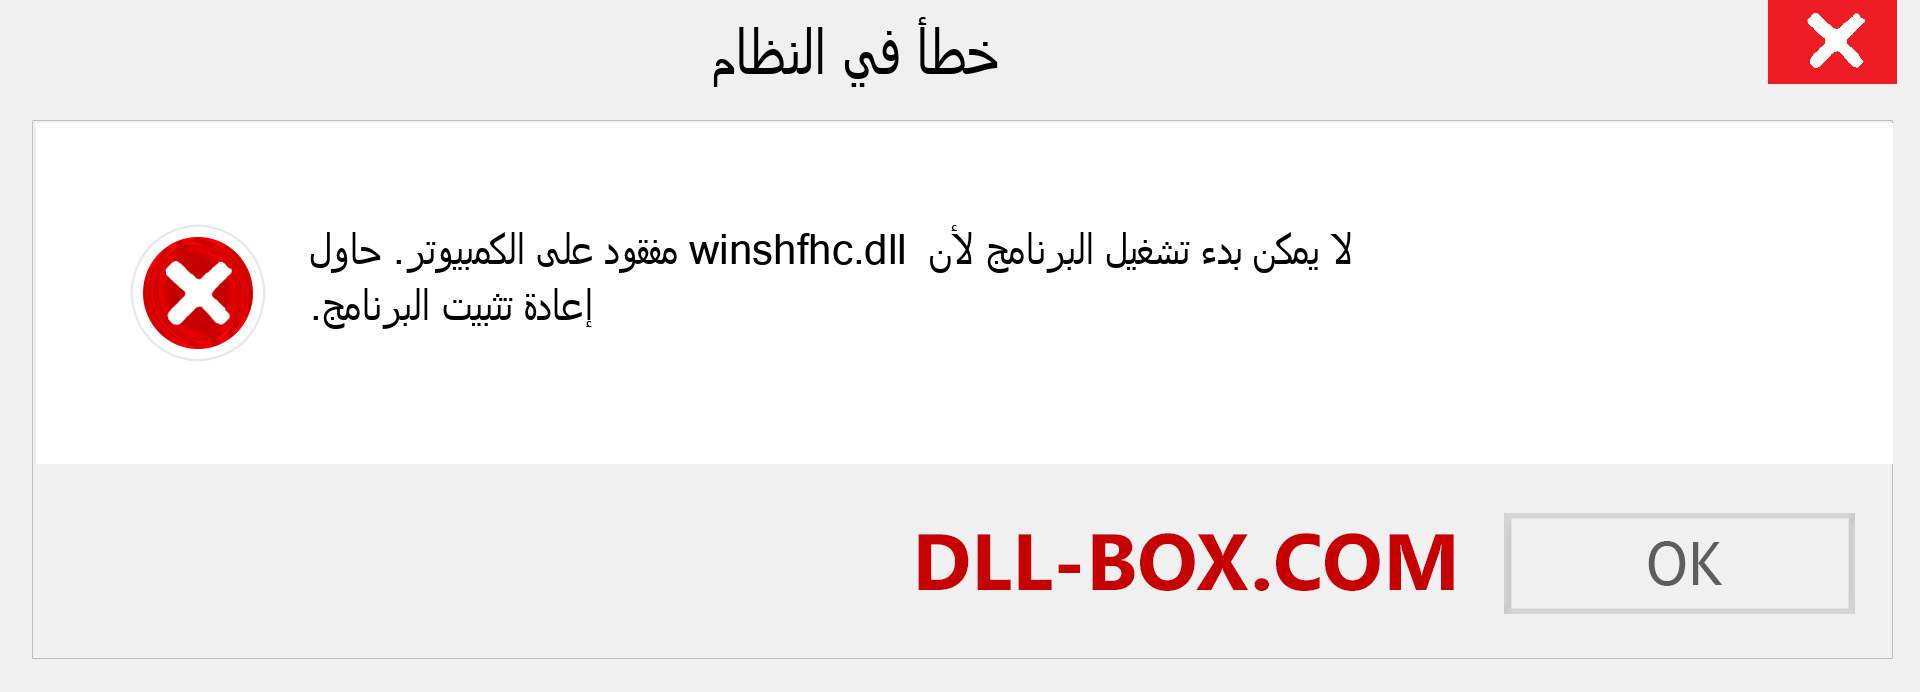 ملف winshfhc.dll مفقود ؟. التنزيل لنظام التشغيل Windows 7 و 8 و 10 - إصلاح خطأ winshfhc dll المفقود على Windows والصور والصور